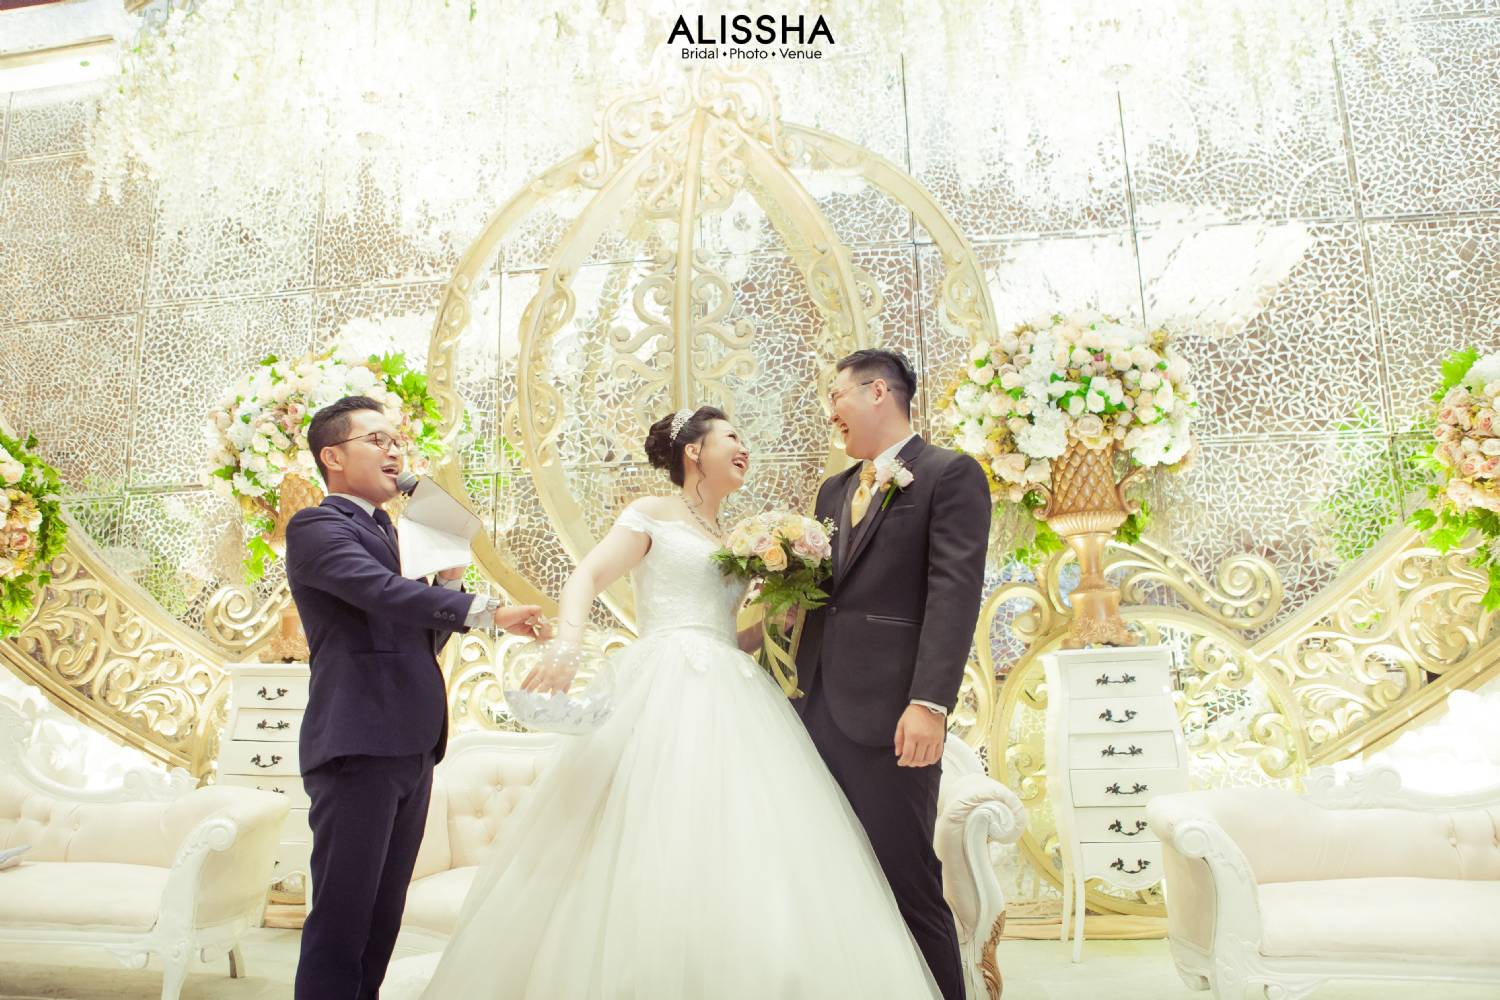 Wedding Day Alessia & Andri 29-09-2019